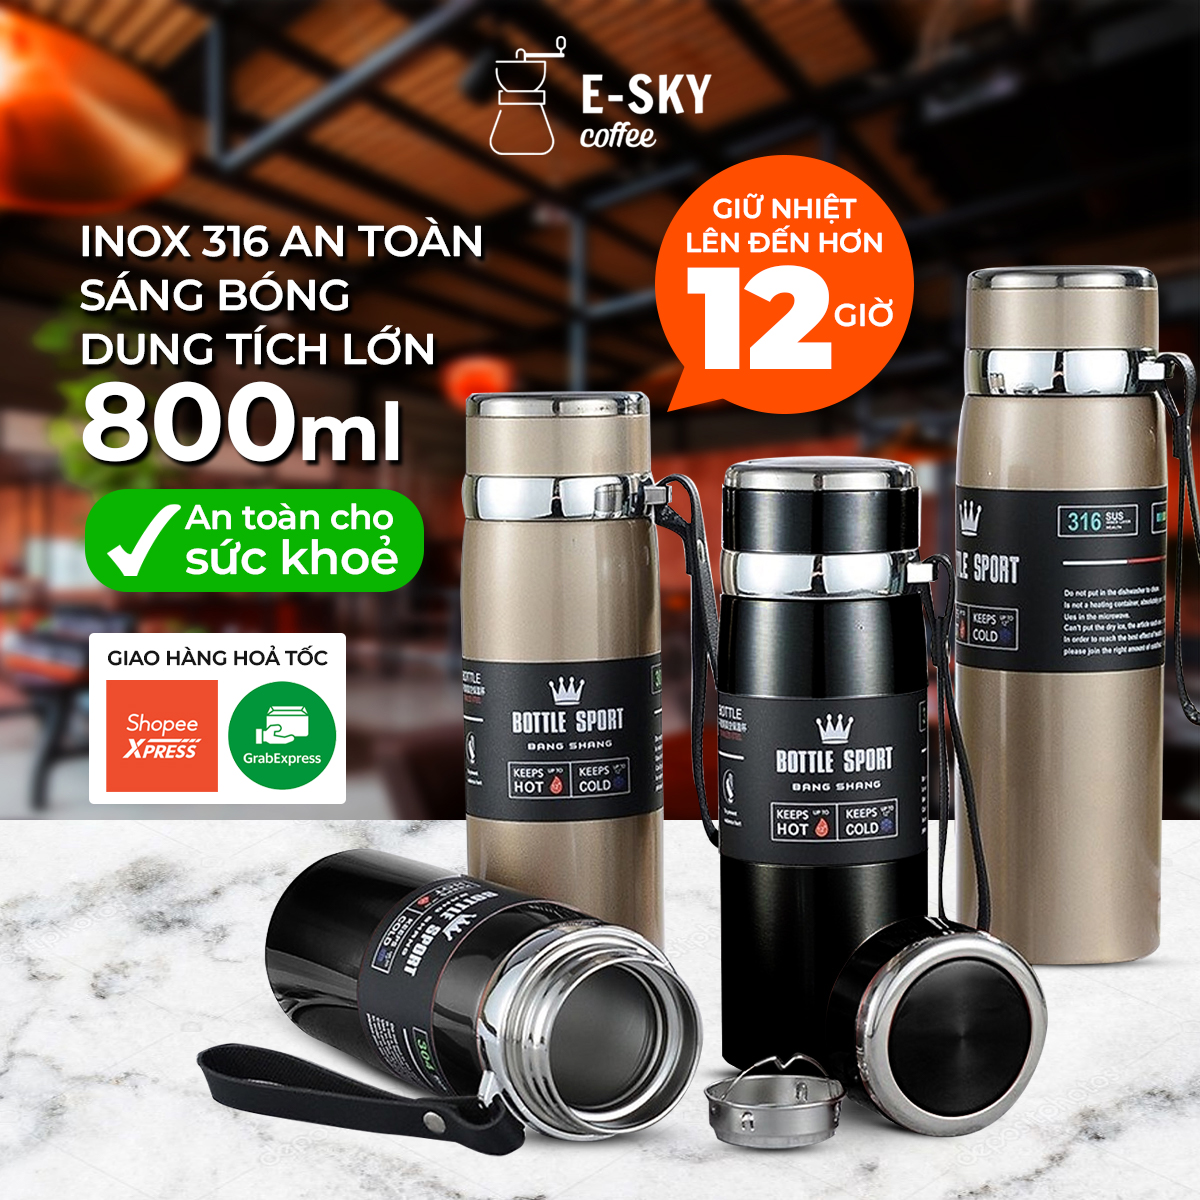 Bình Giữ Nhiệt Inox Cao Cấp E-SKY Coffee Bền Đẹp Tiện Lợi Giữ Nhiệt Tốt Thể Tích 800ml